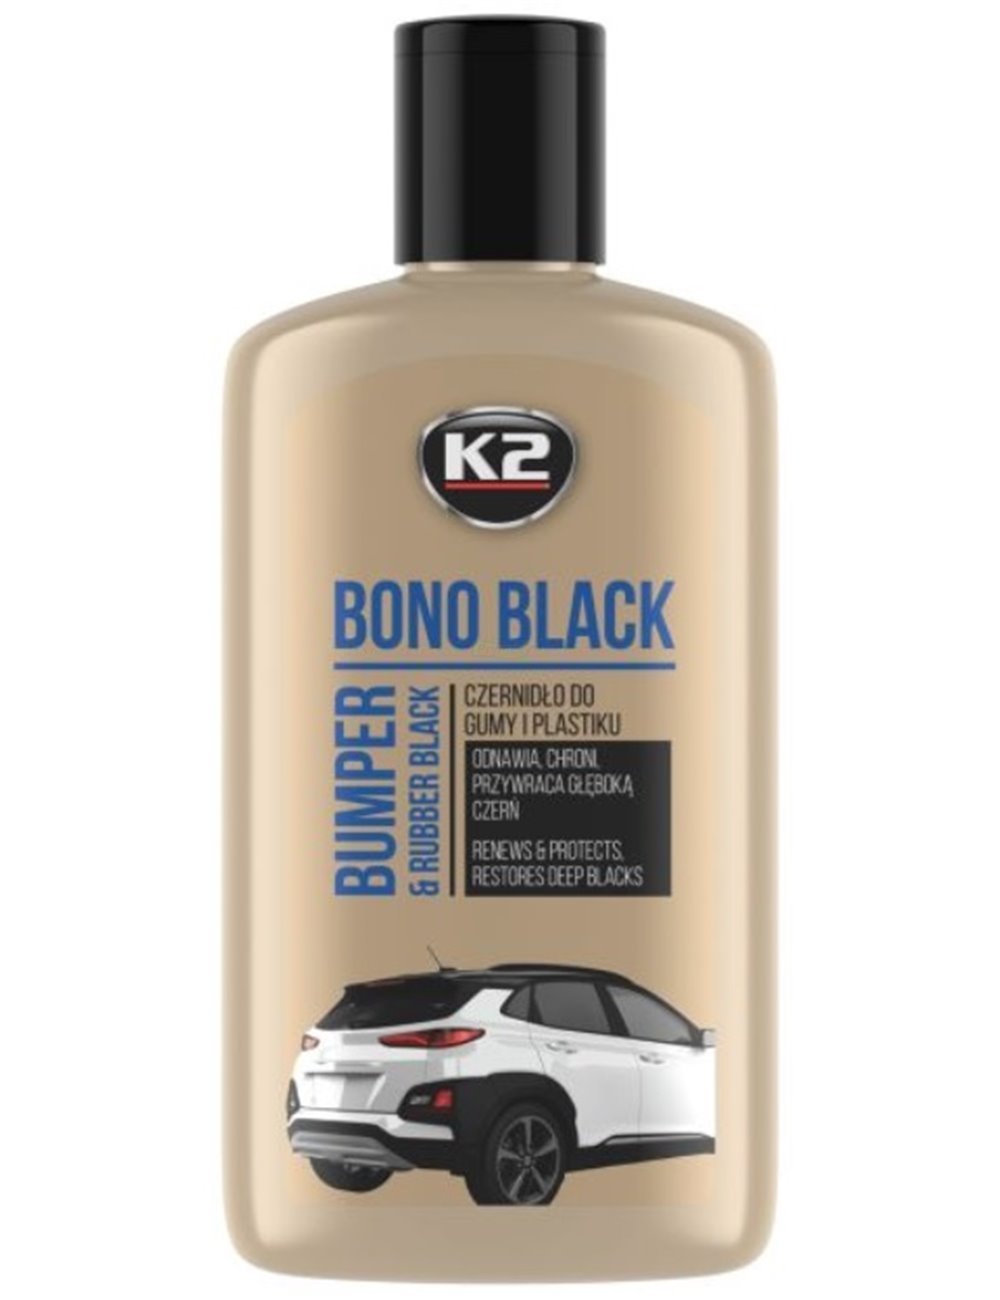 K2 Bono Black Czenidło do Gumy i Plastiku Konserwuje i Nabłyszcza 250 ml